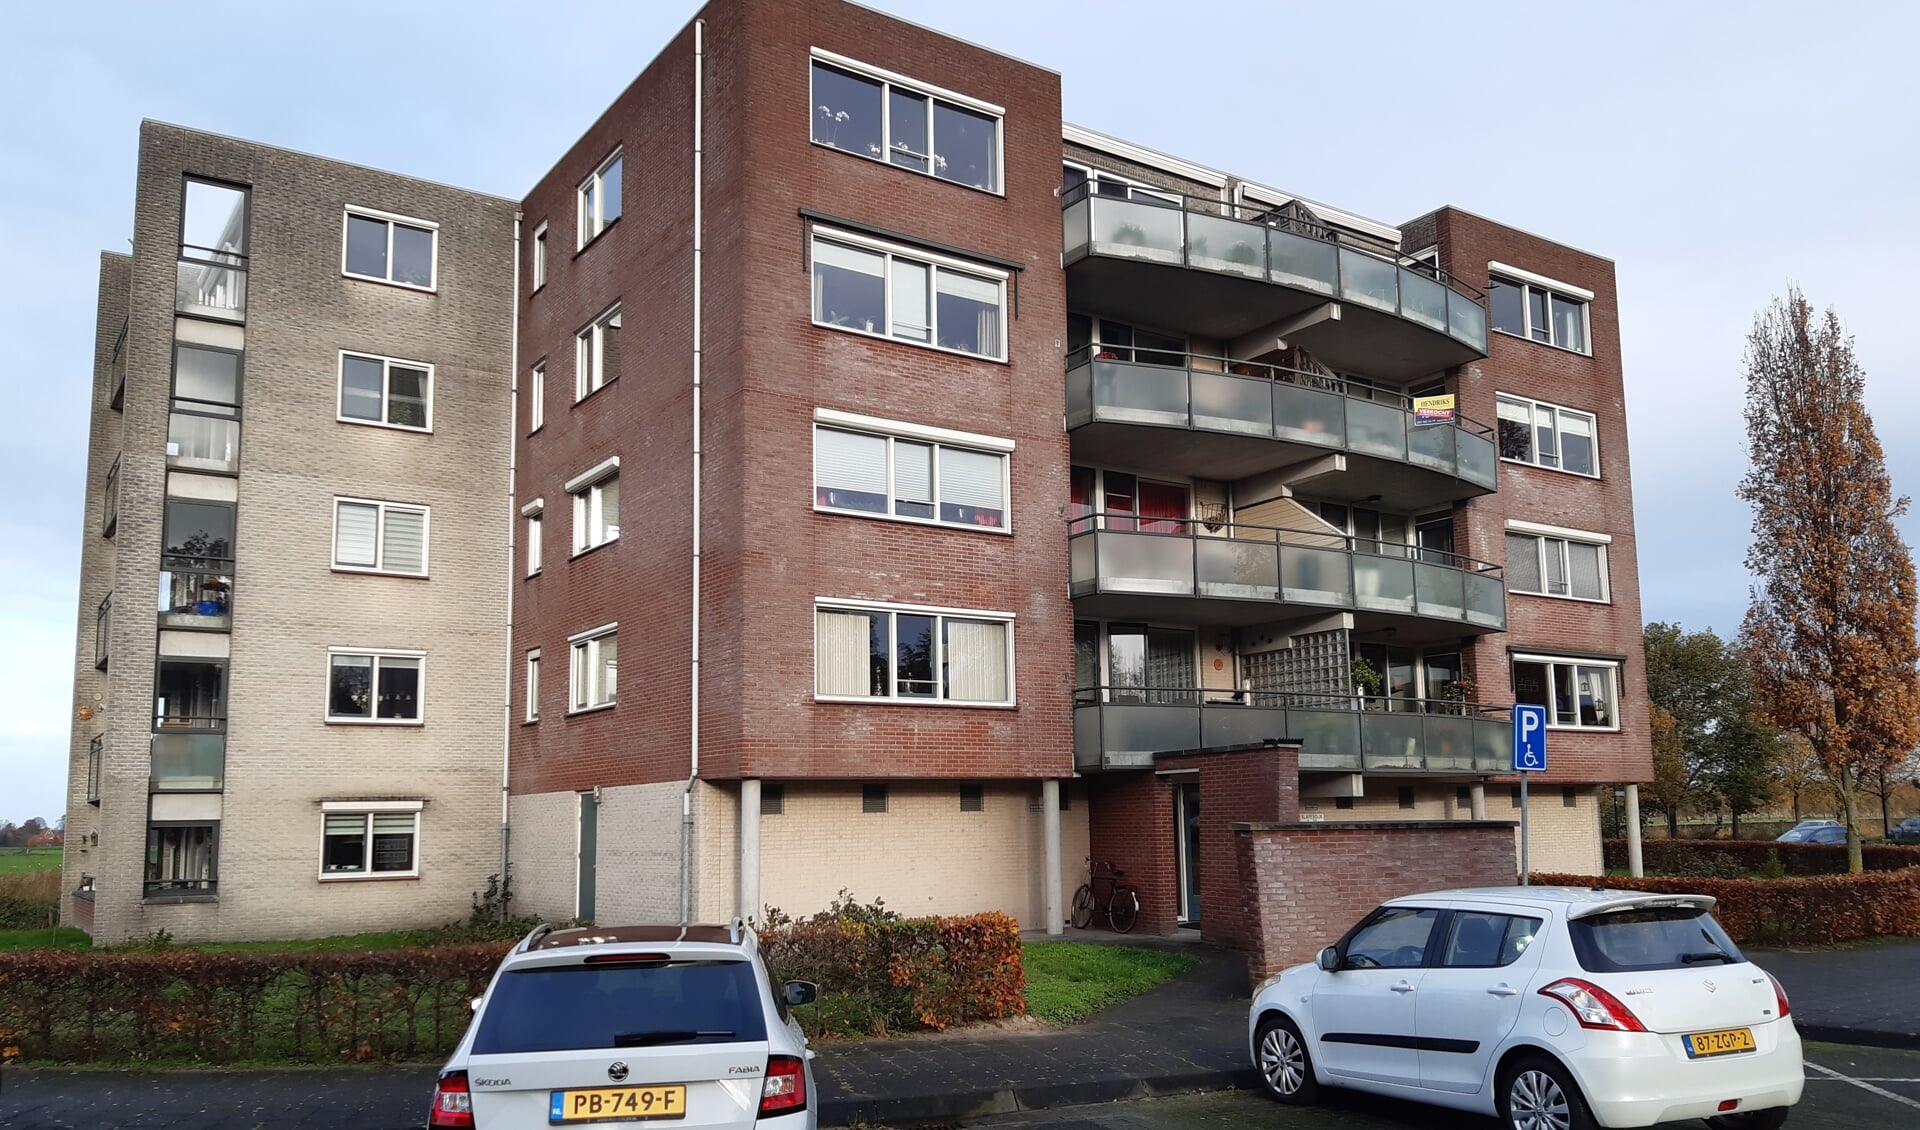 De vereniging van eigenaren van dit appartementencomplex (Valleistaete in 't Vliet) klopte bij de gemeente aan voor steun voor een onderzoek naar verduurzaming van het complex.